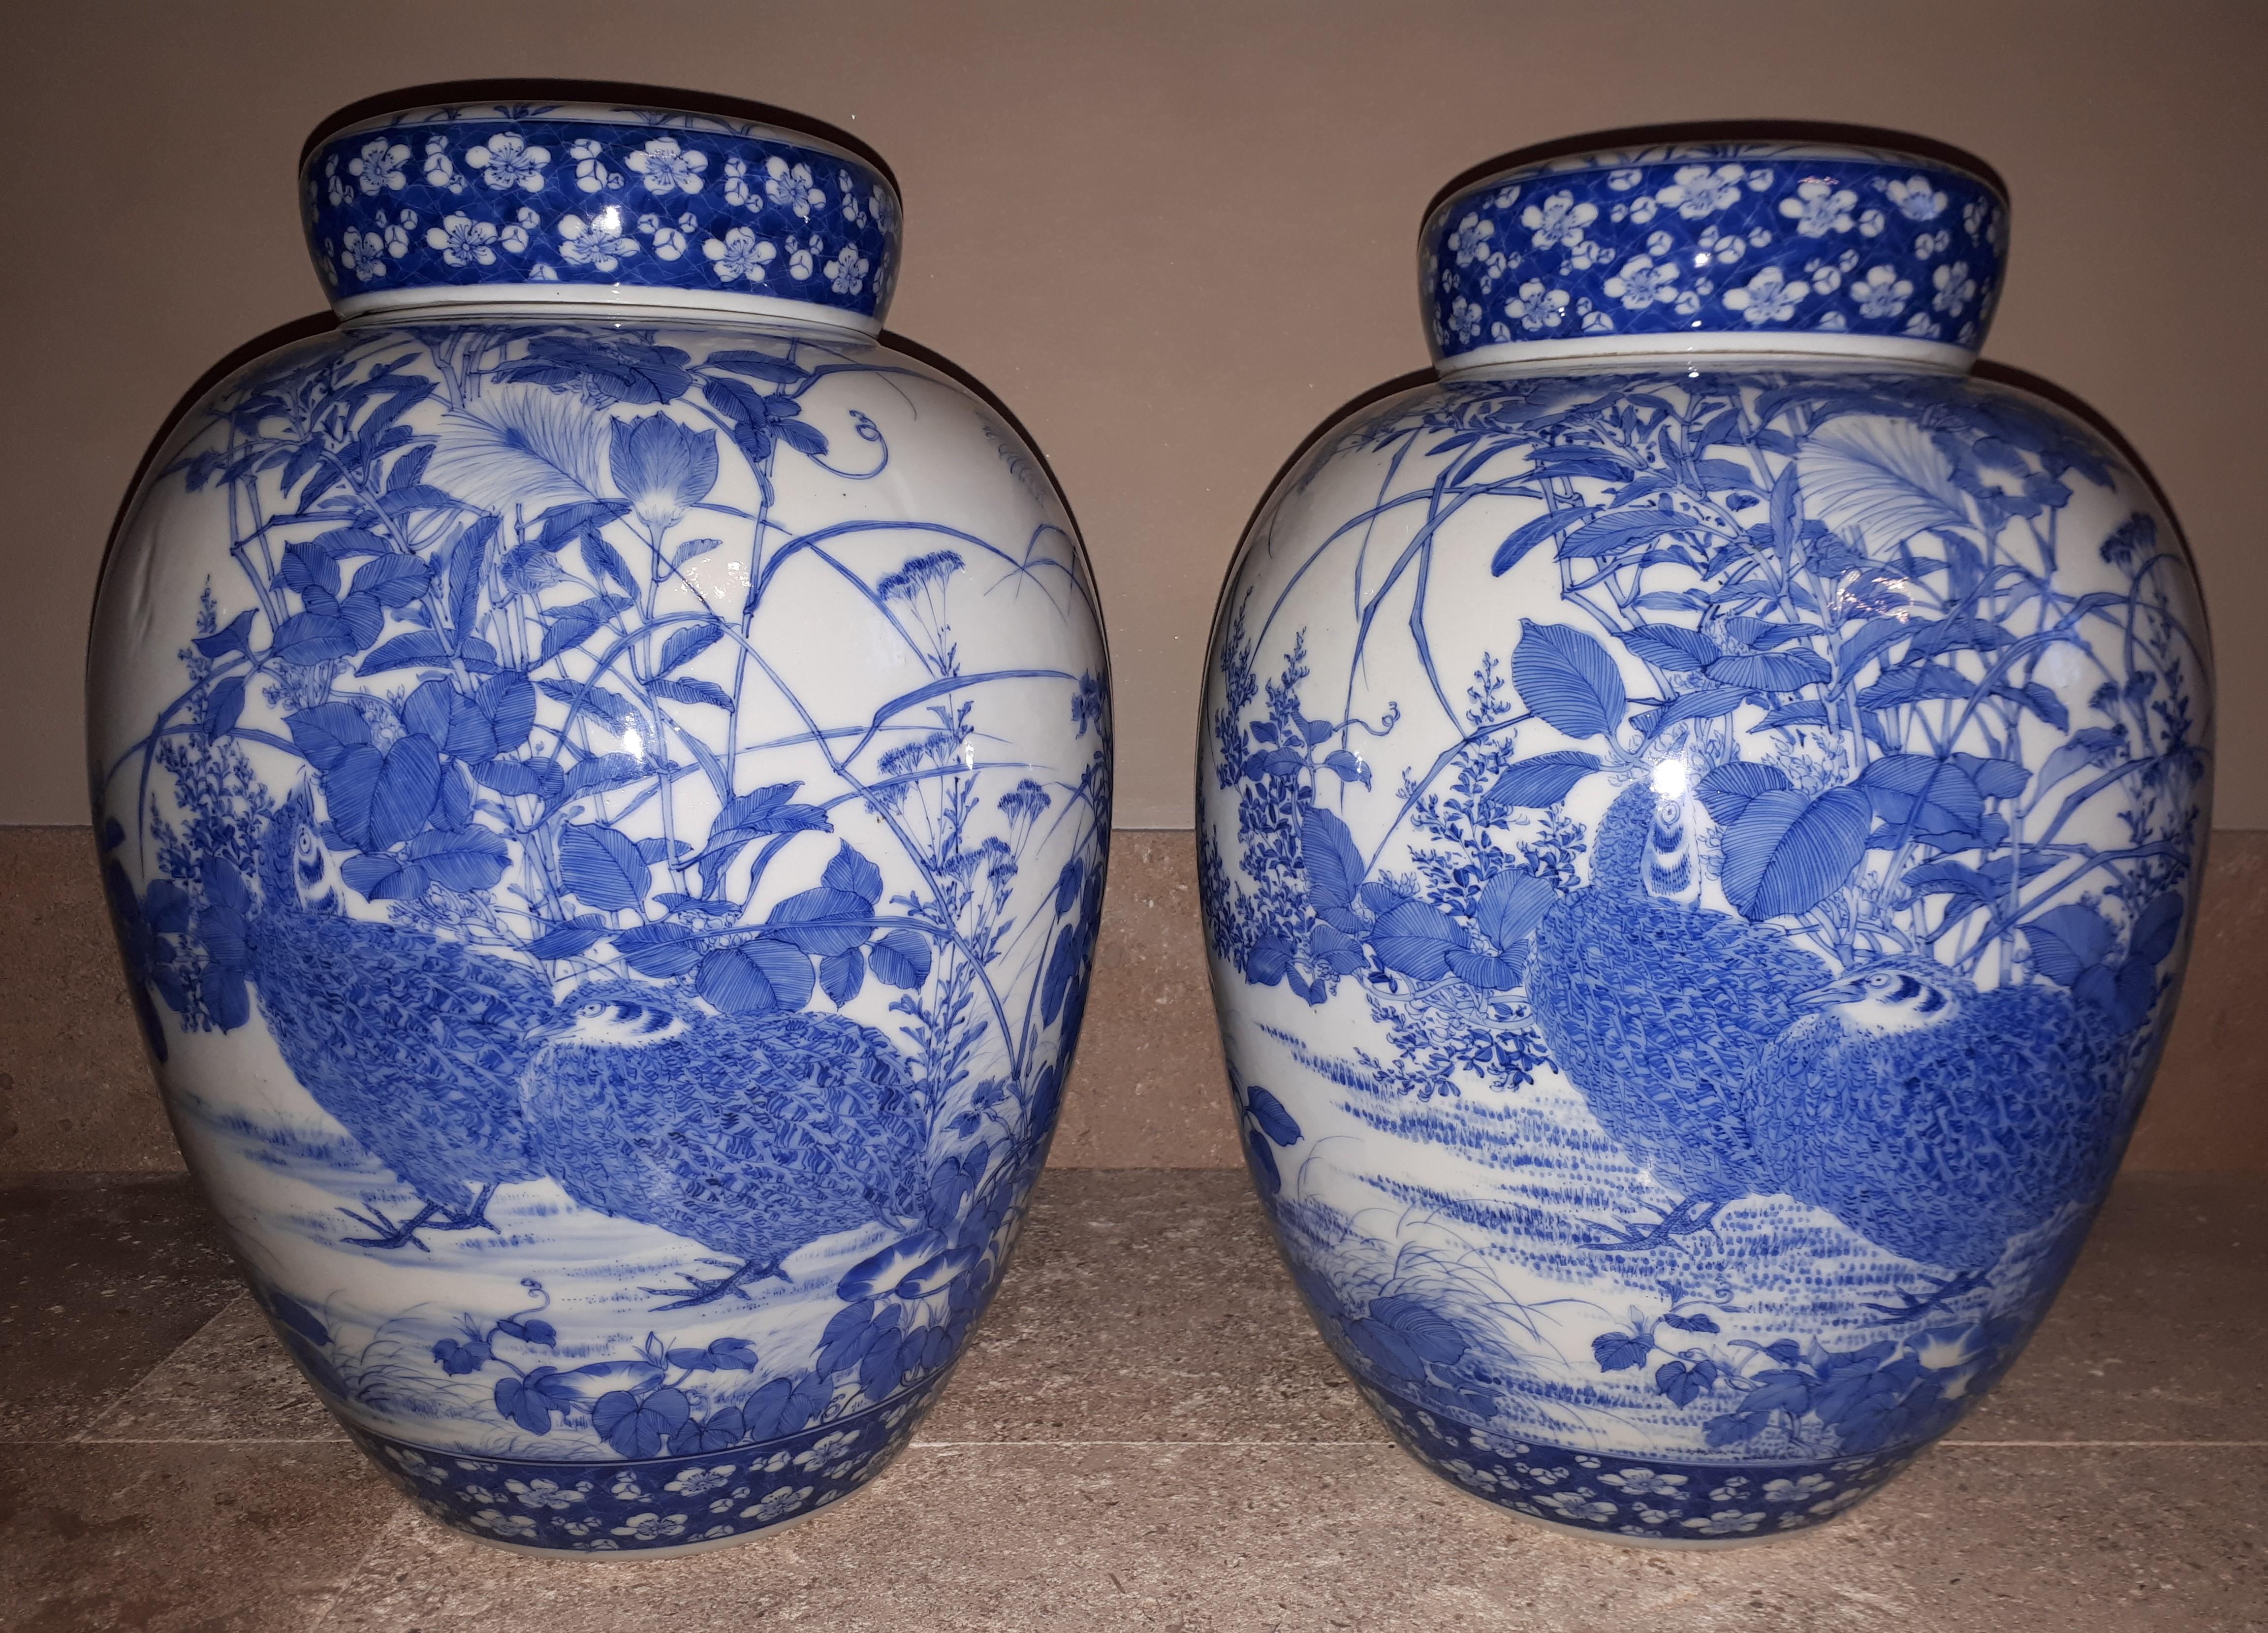 Magnifique paire de vases en porcelaine avec une riche décoration en bleu sous glaçure d'un couple de perdrix parmi la végétation. Un minime défaut sur chaque couvercle intérieur en forme de fleur de lotus stylisée (un minuscule cheveu sur l'un, un